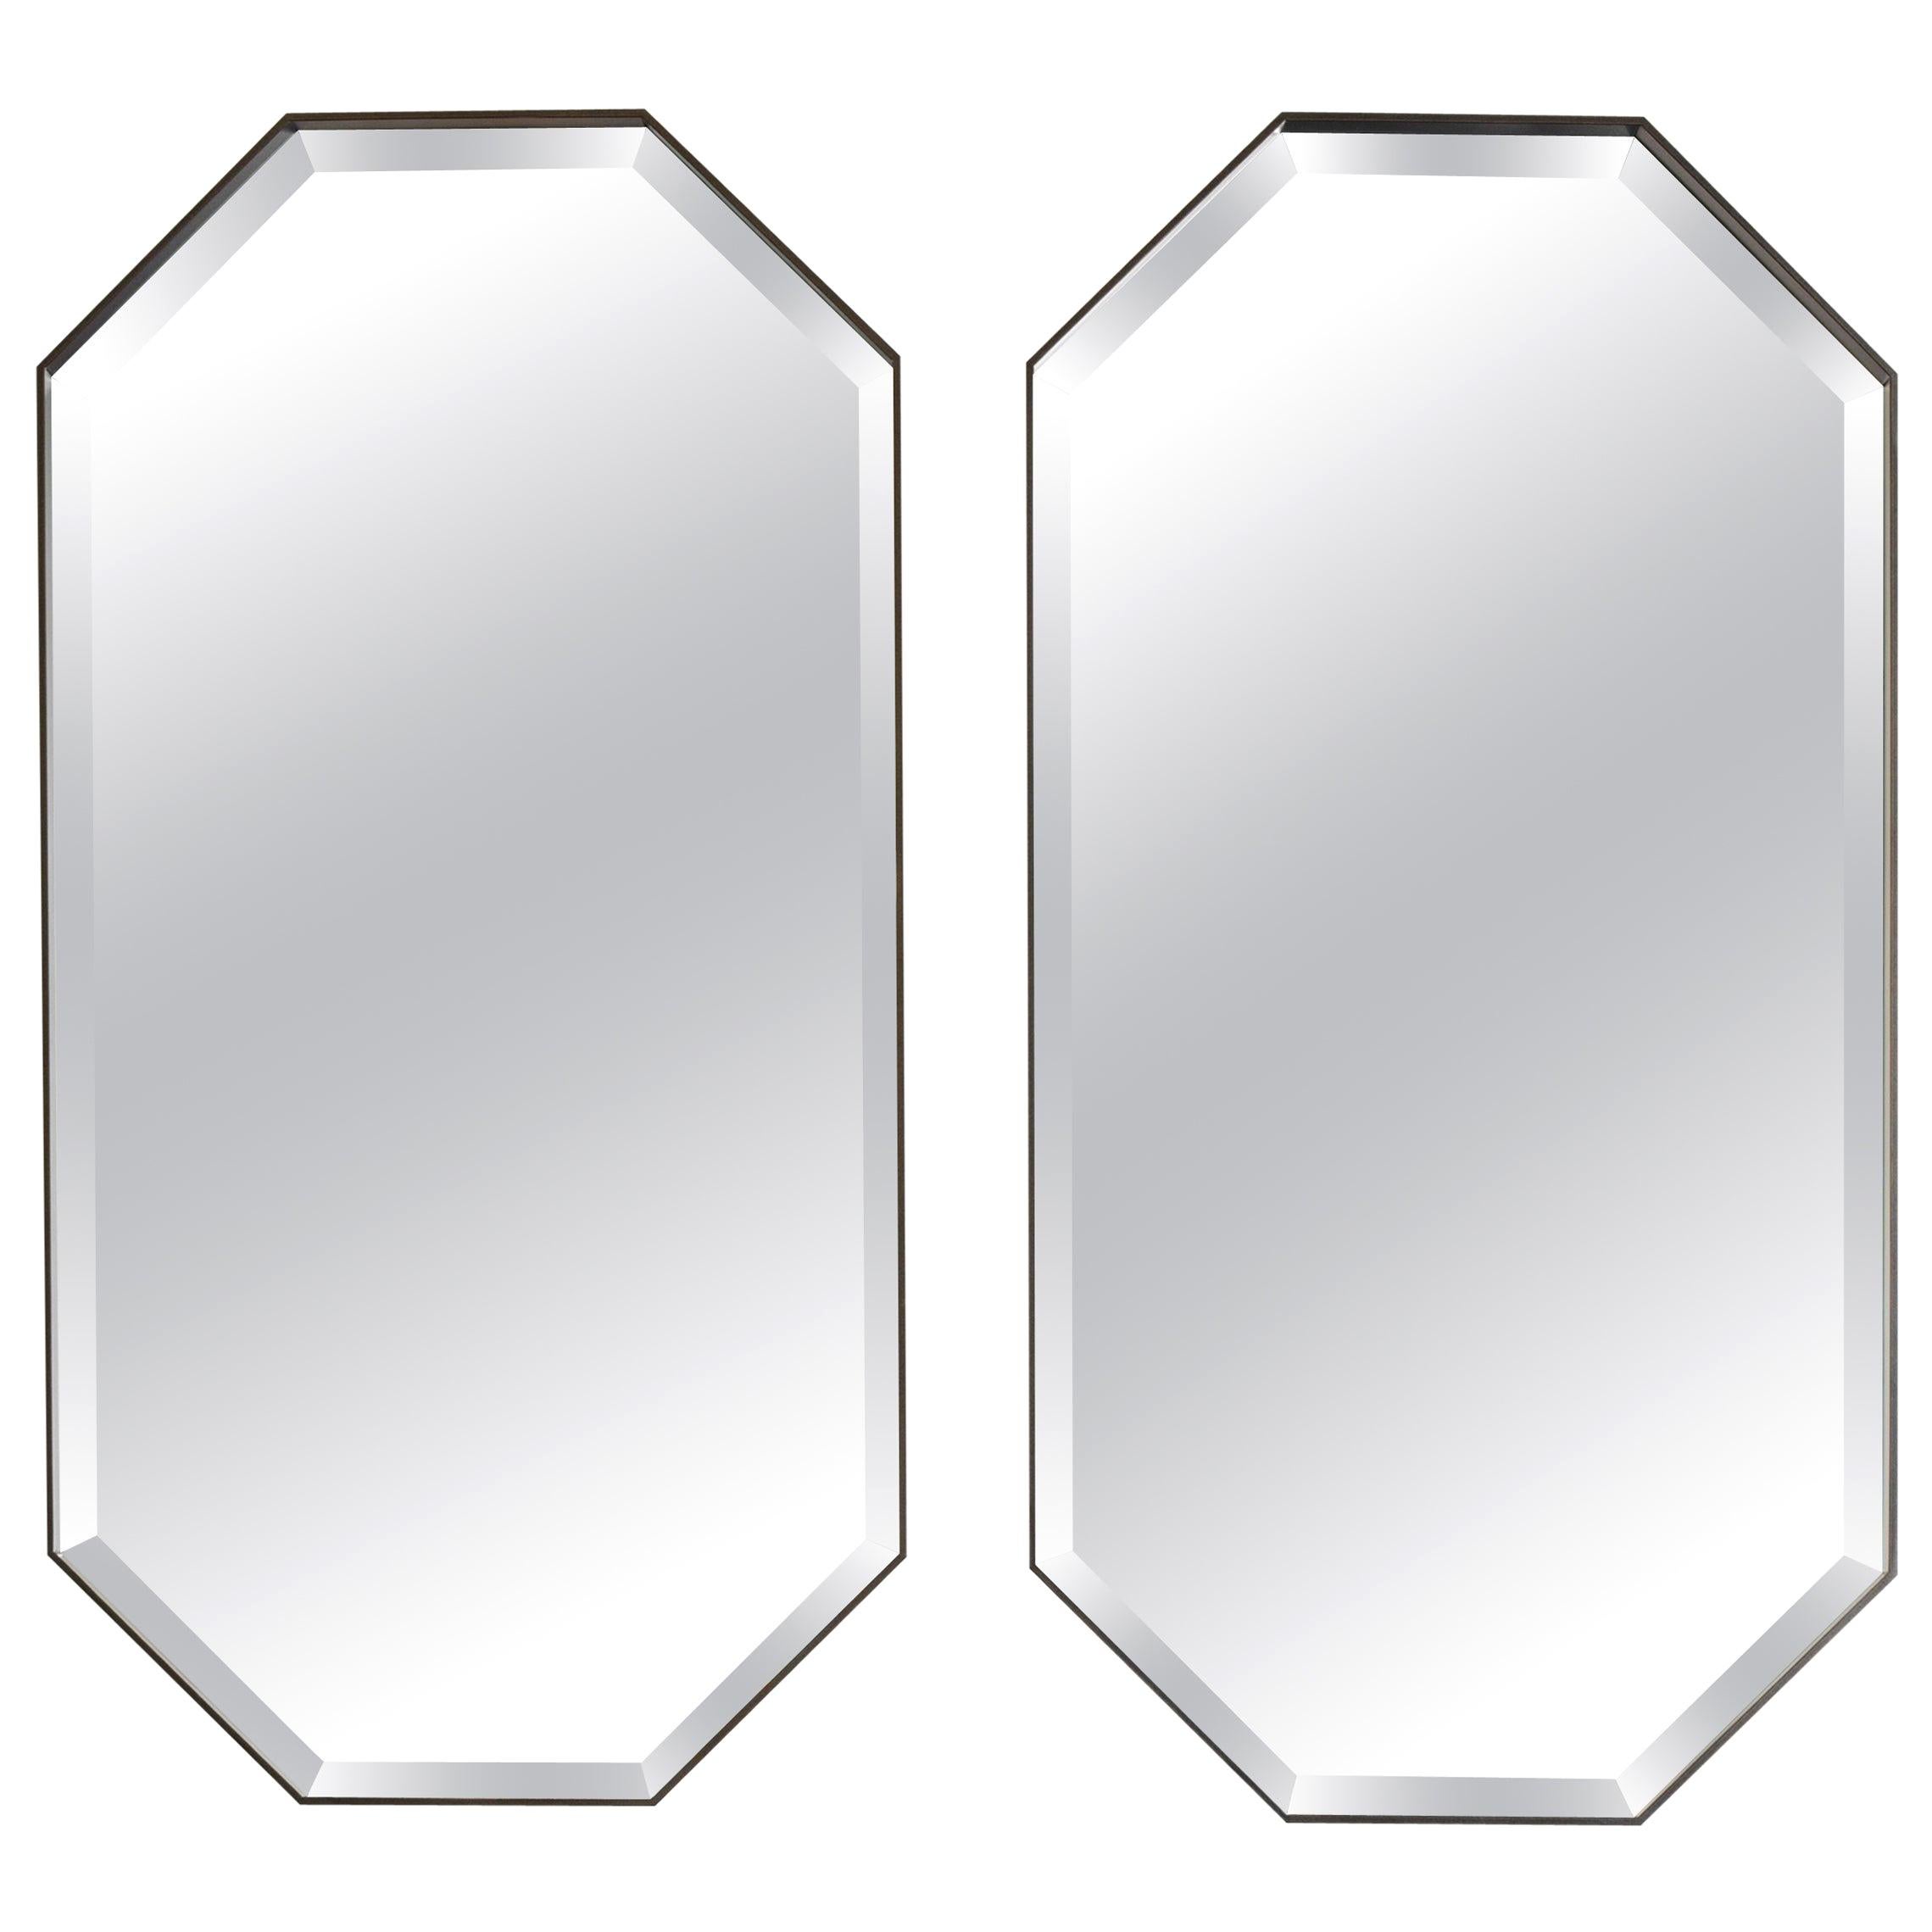 Eros: Runde Stahlspiegel mit glattem oder antikem Spiegel, Industrial Chic-Stil